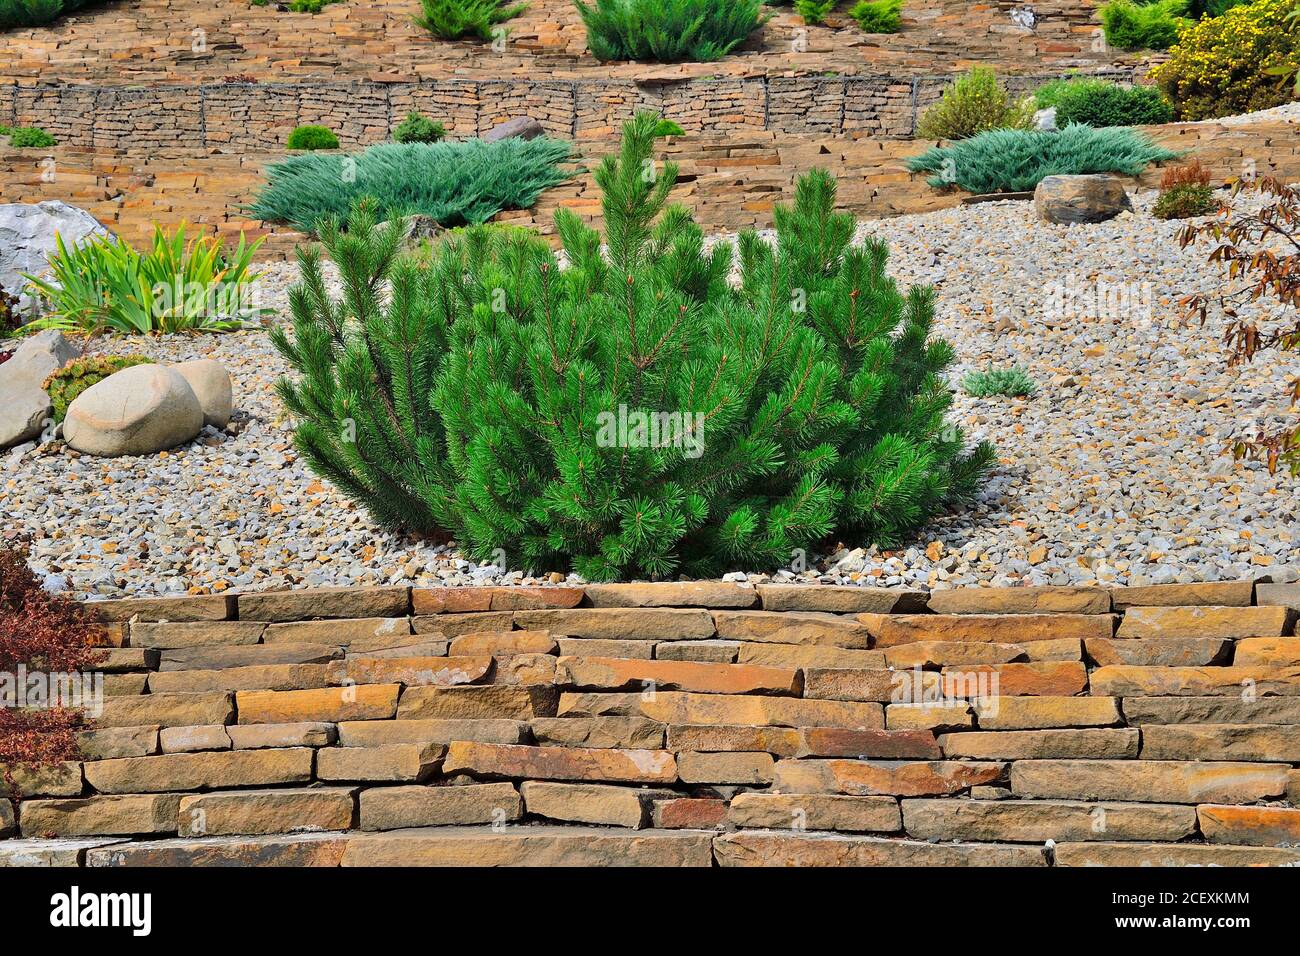 Pino bosnio enano Pinus leucodermis - planta decorativa de coníferas perennes de bajo tamaño en jardín rocoso. Jardinería, horticultura o desi paisaje Foto de stock